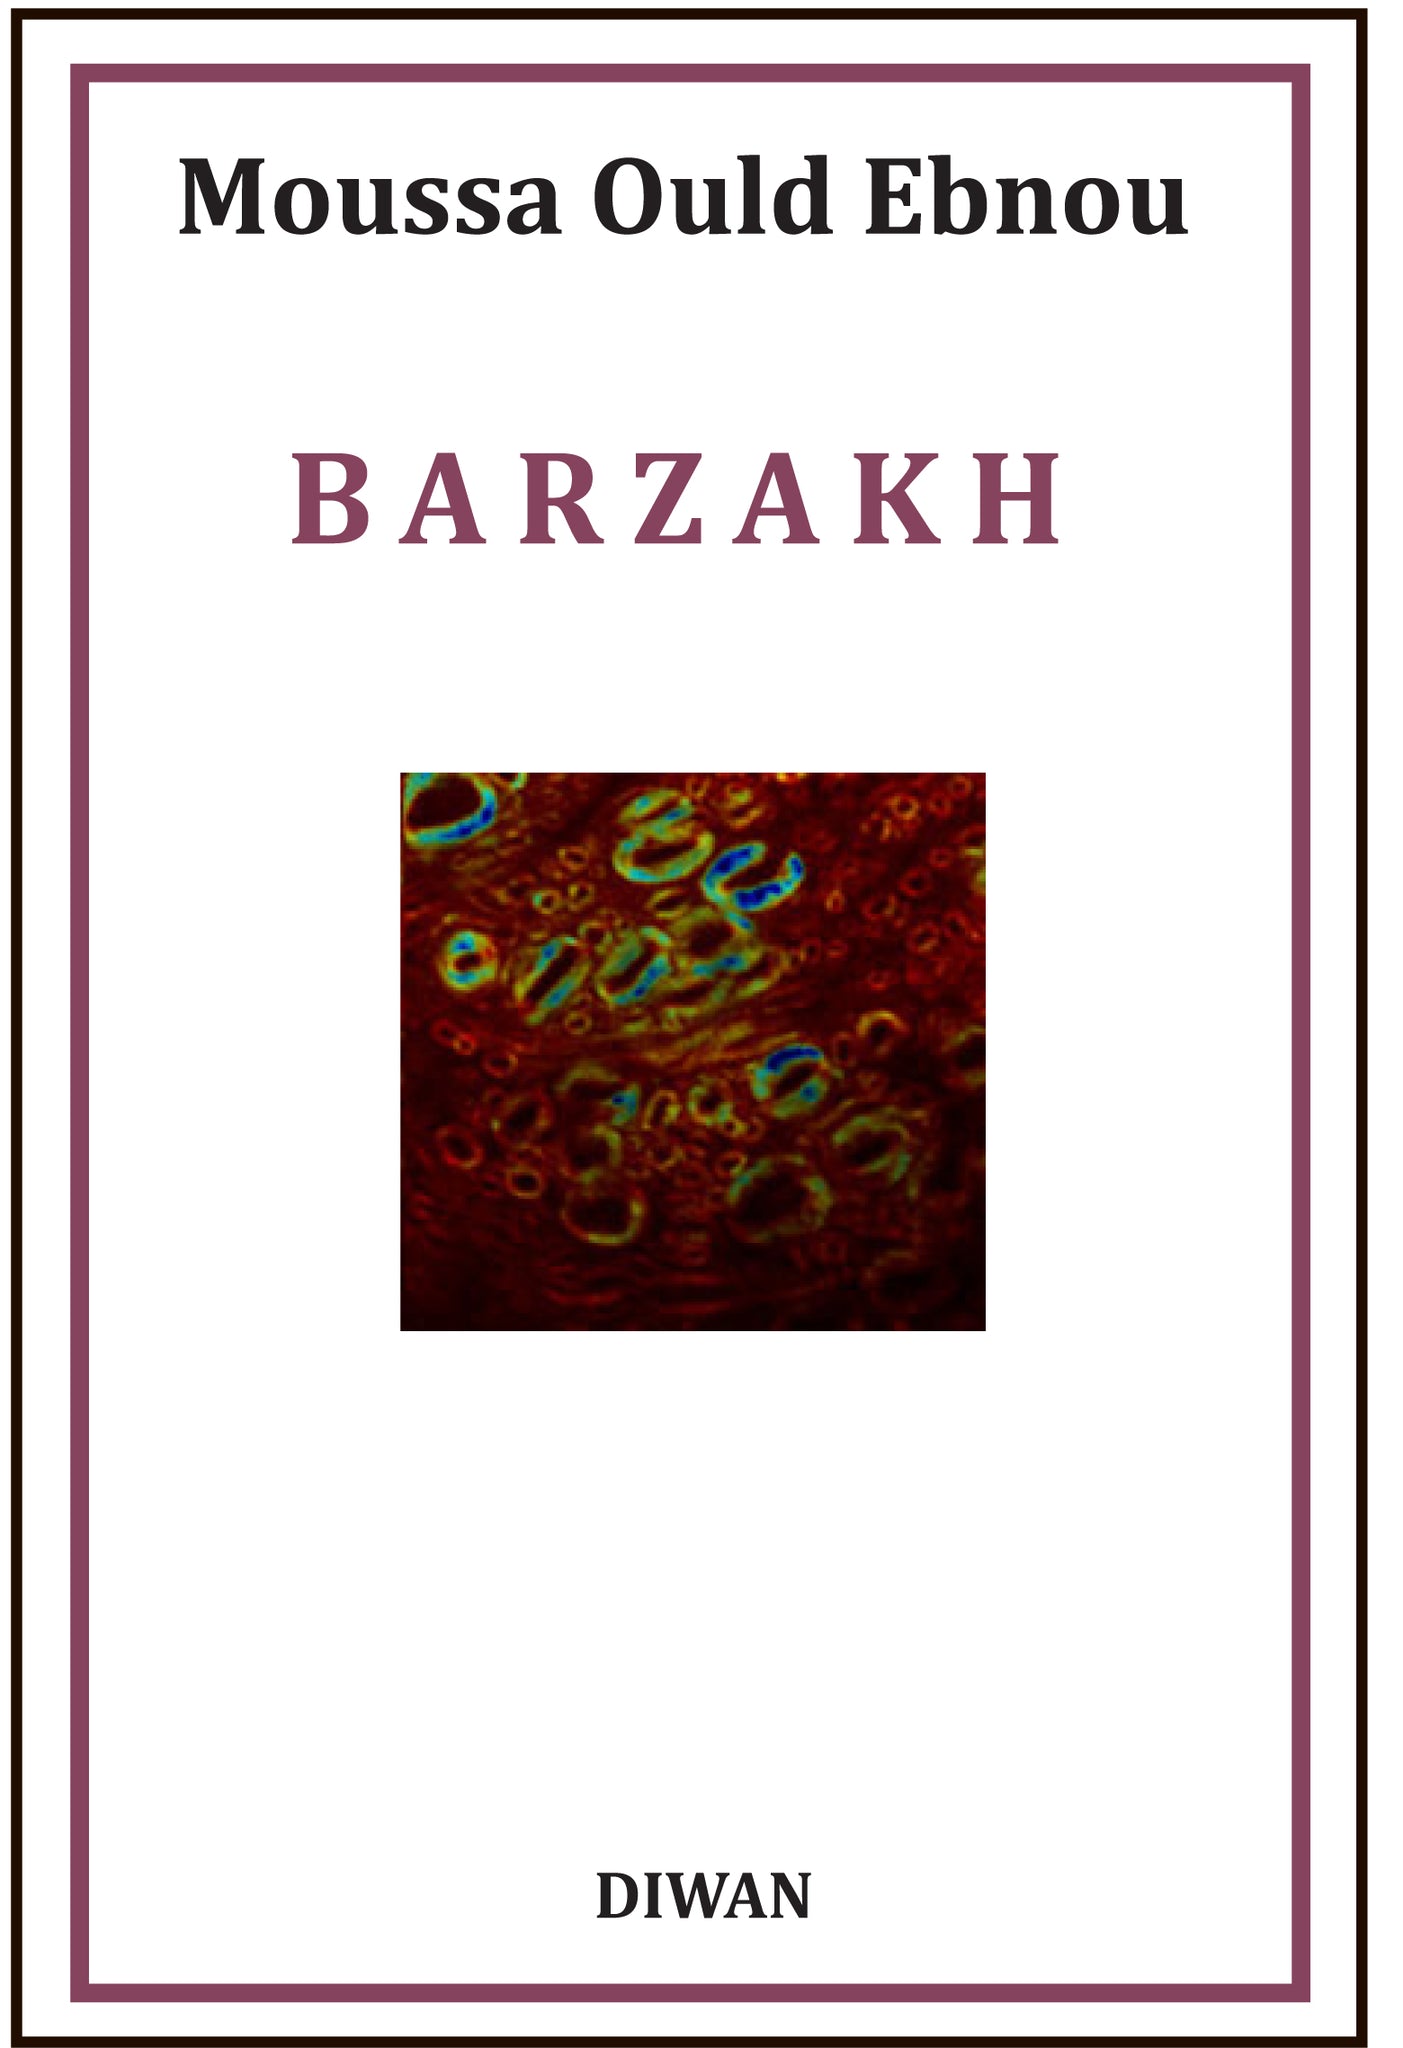 Barzakh